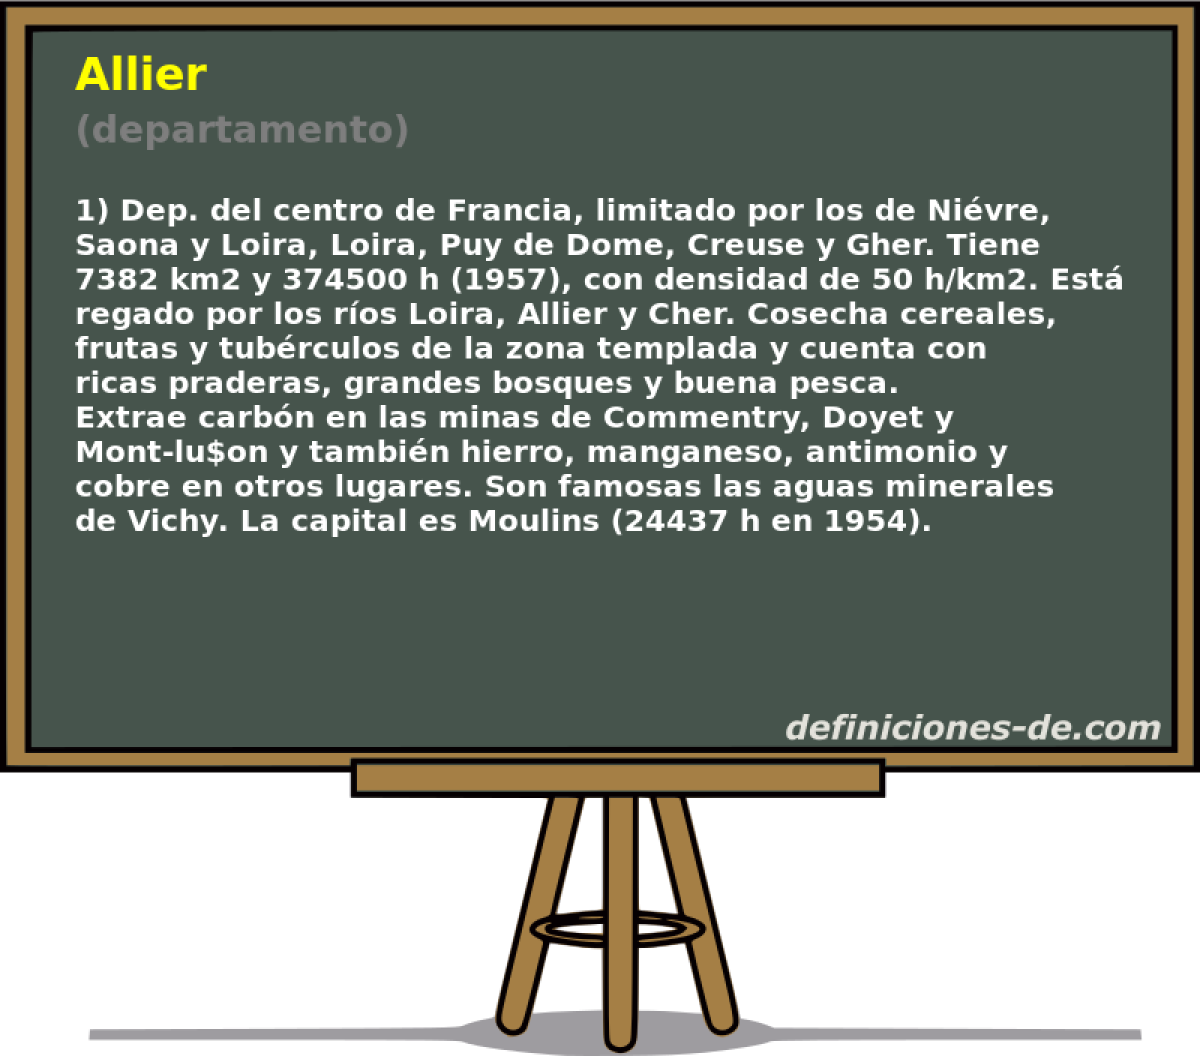 Allier (departamento)